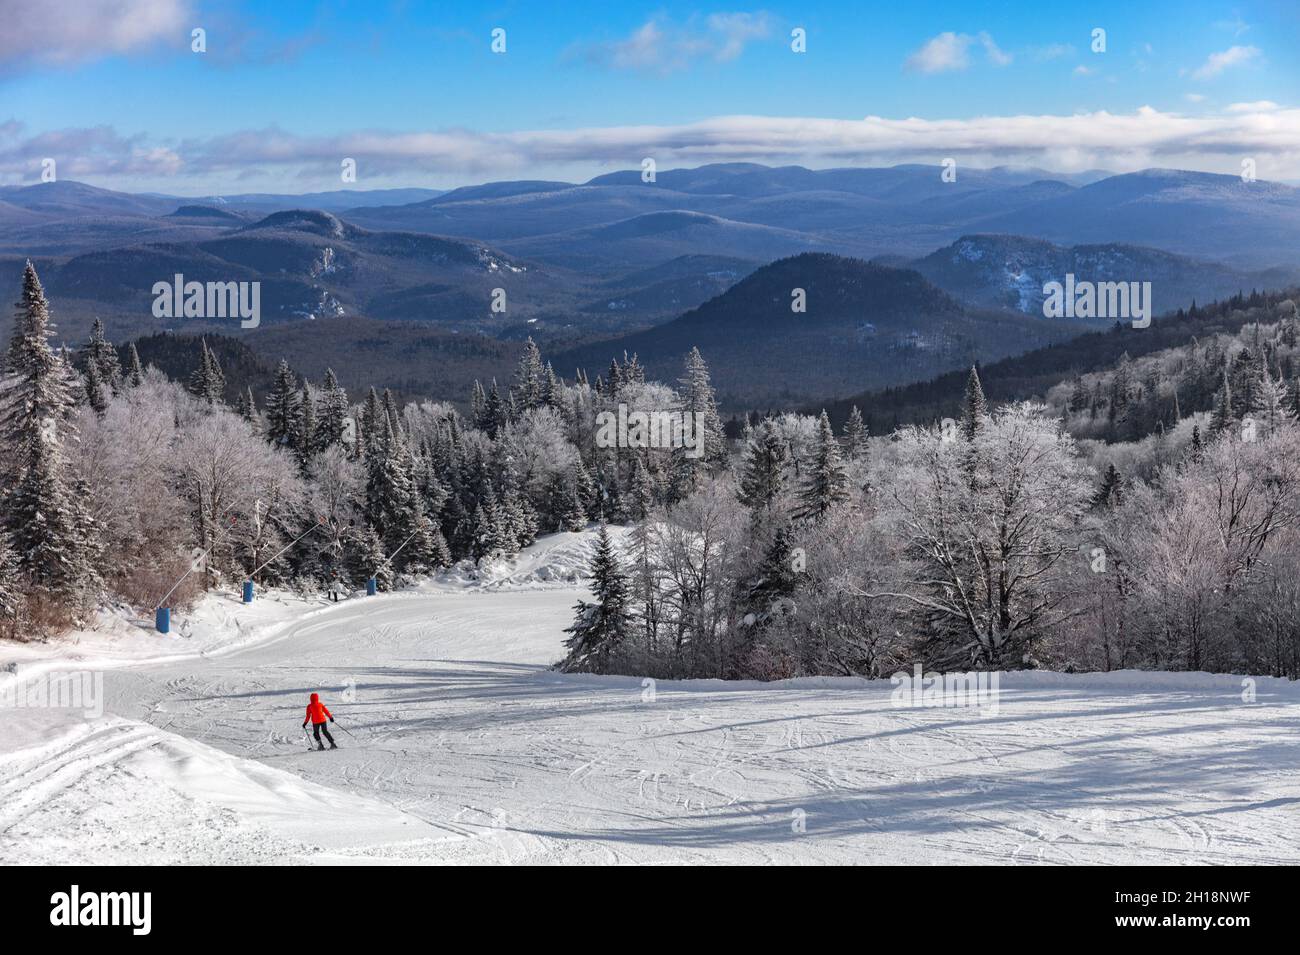 Piste de ski paysage de montagne paysage de lansdcape avec lonelys skier ski alpin sur les premières pistes de neige fraîche seule avec des arbres gelés.Station de sports d'hiver Banque D'Images